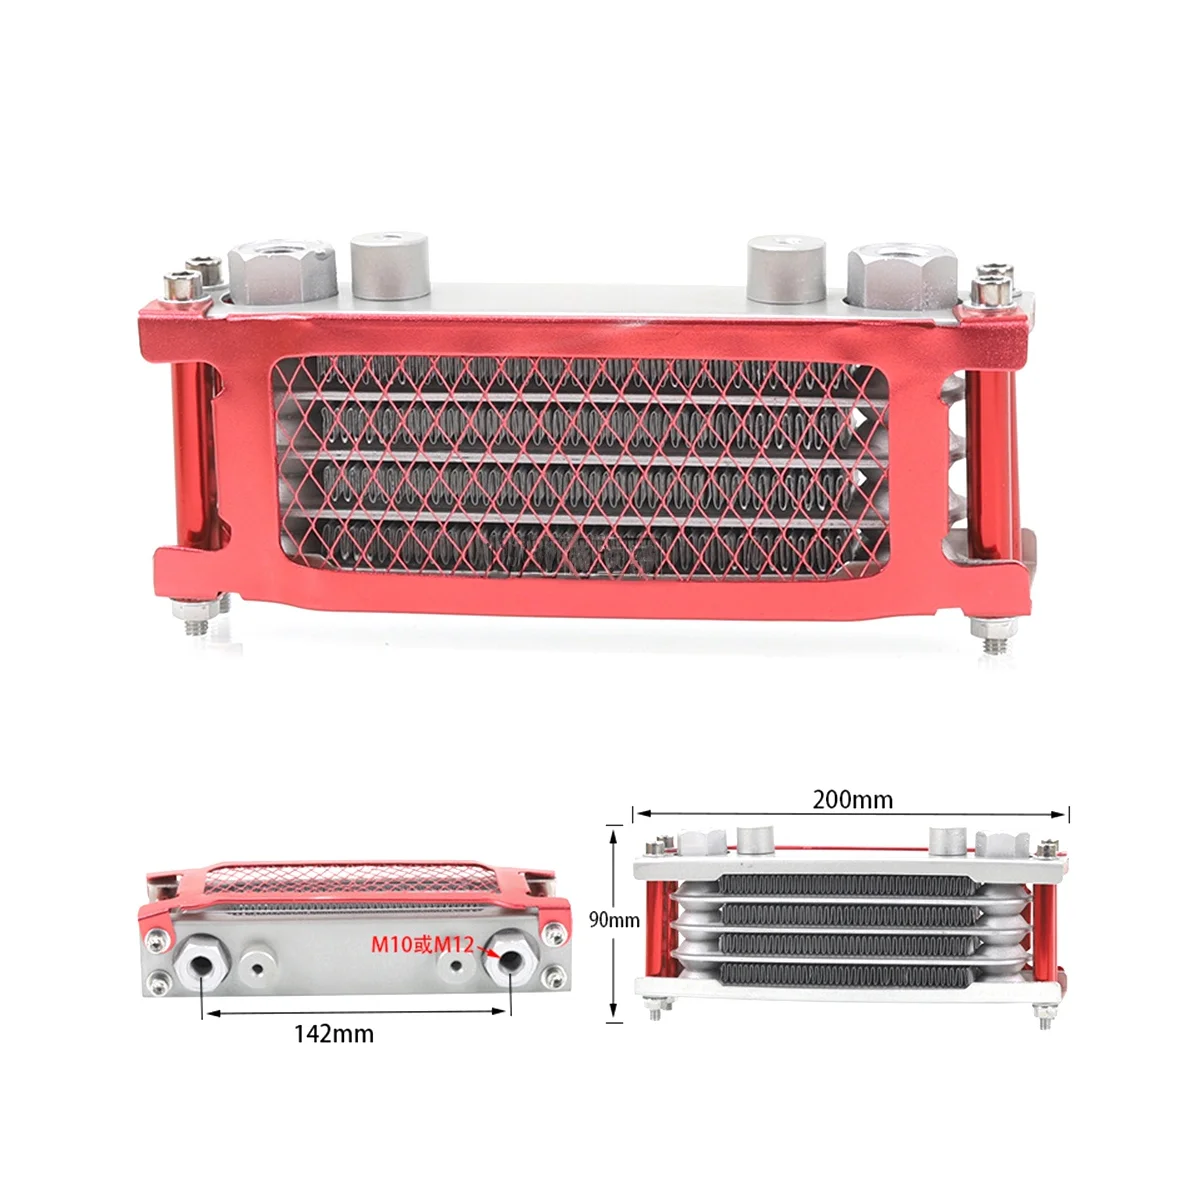 

Интерфейсный радиатор M12, масляный радиатор, алюминиевая система охлаждения для мотоцикла 50-160 куб. См, красного цвета